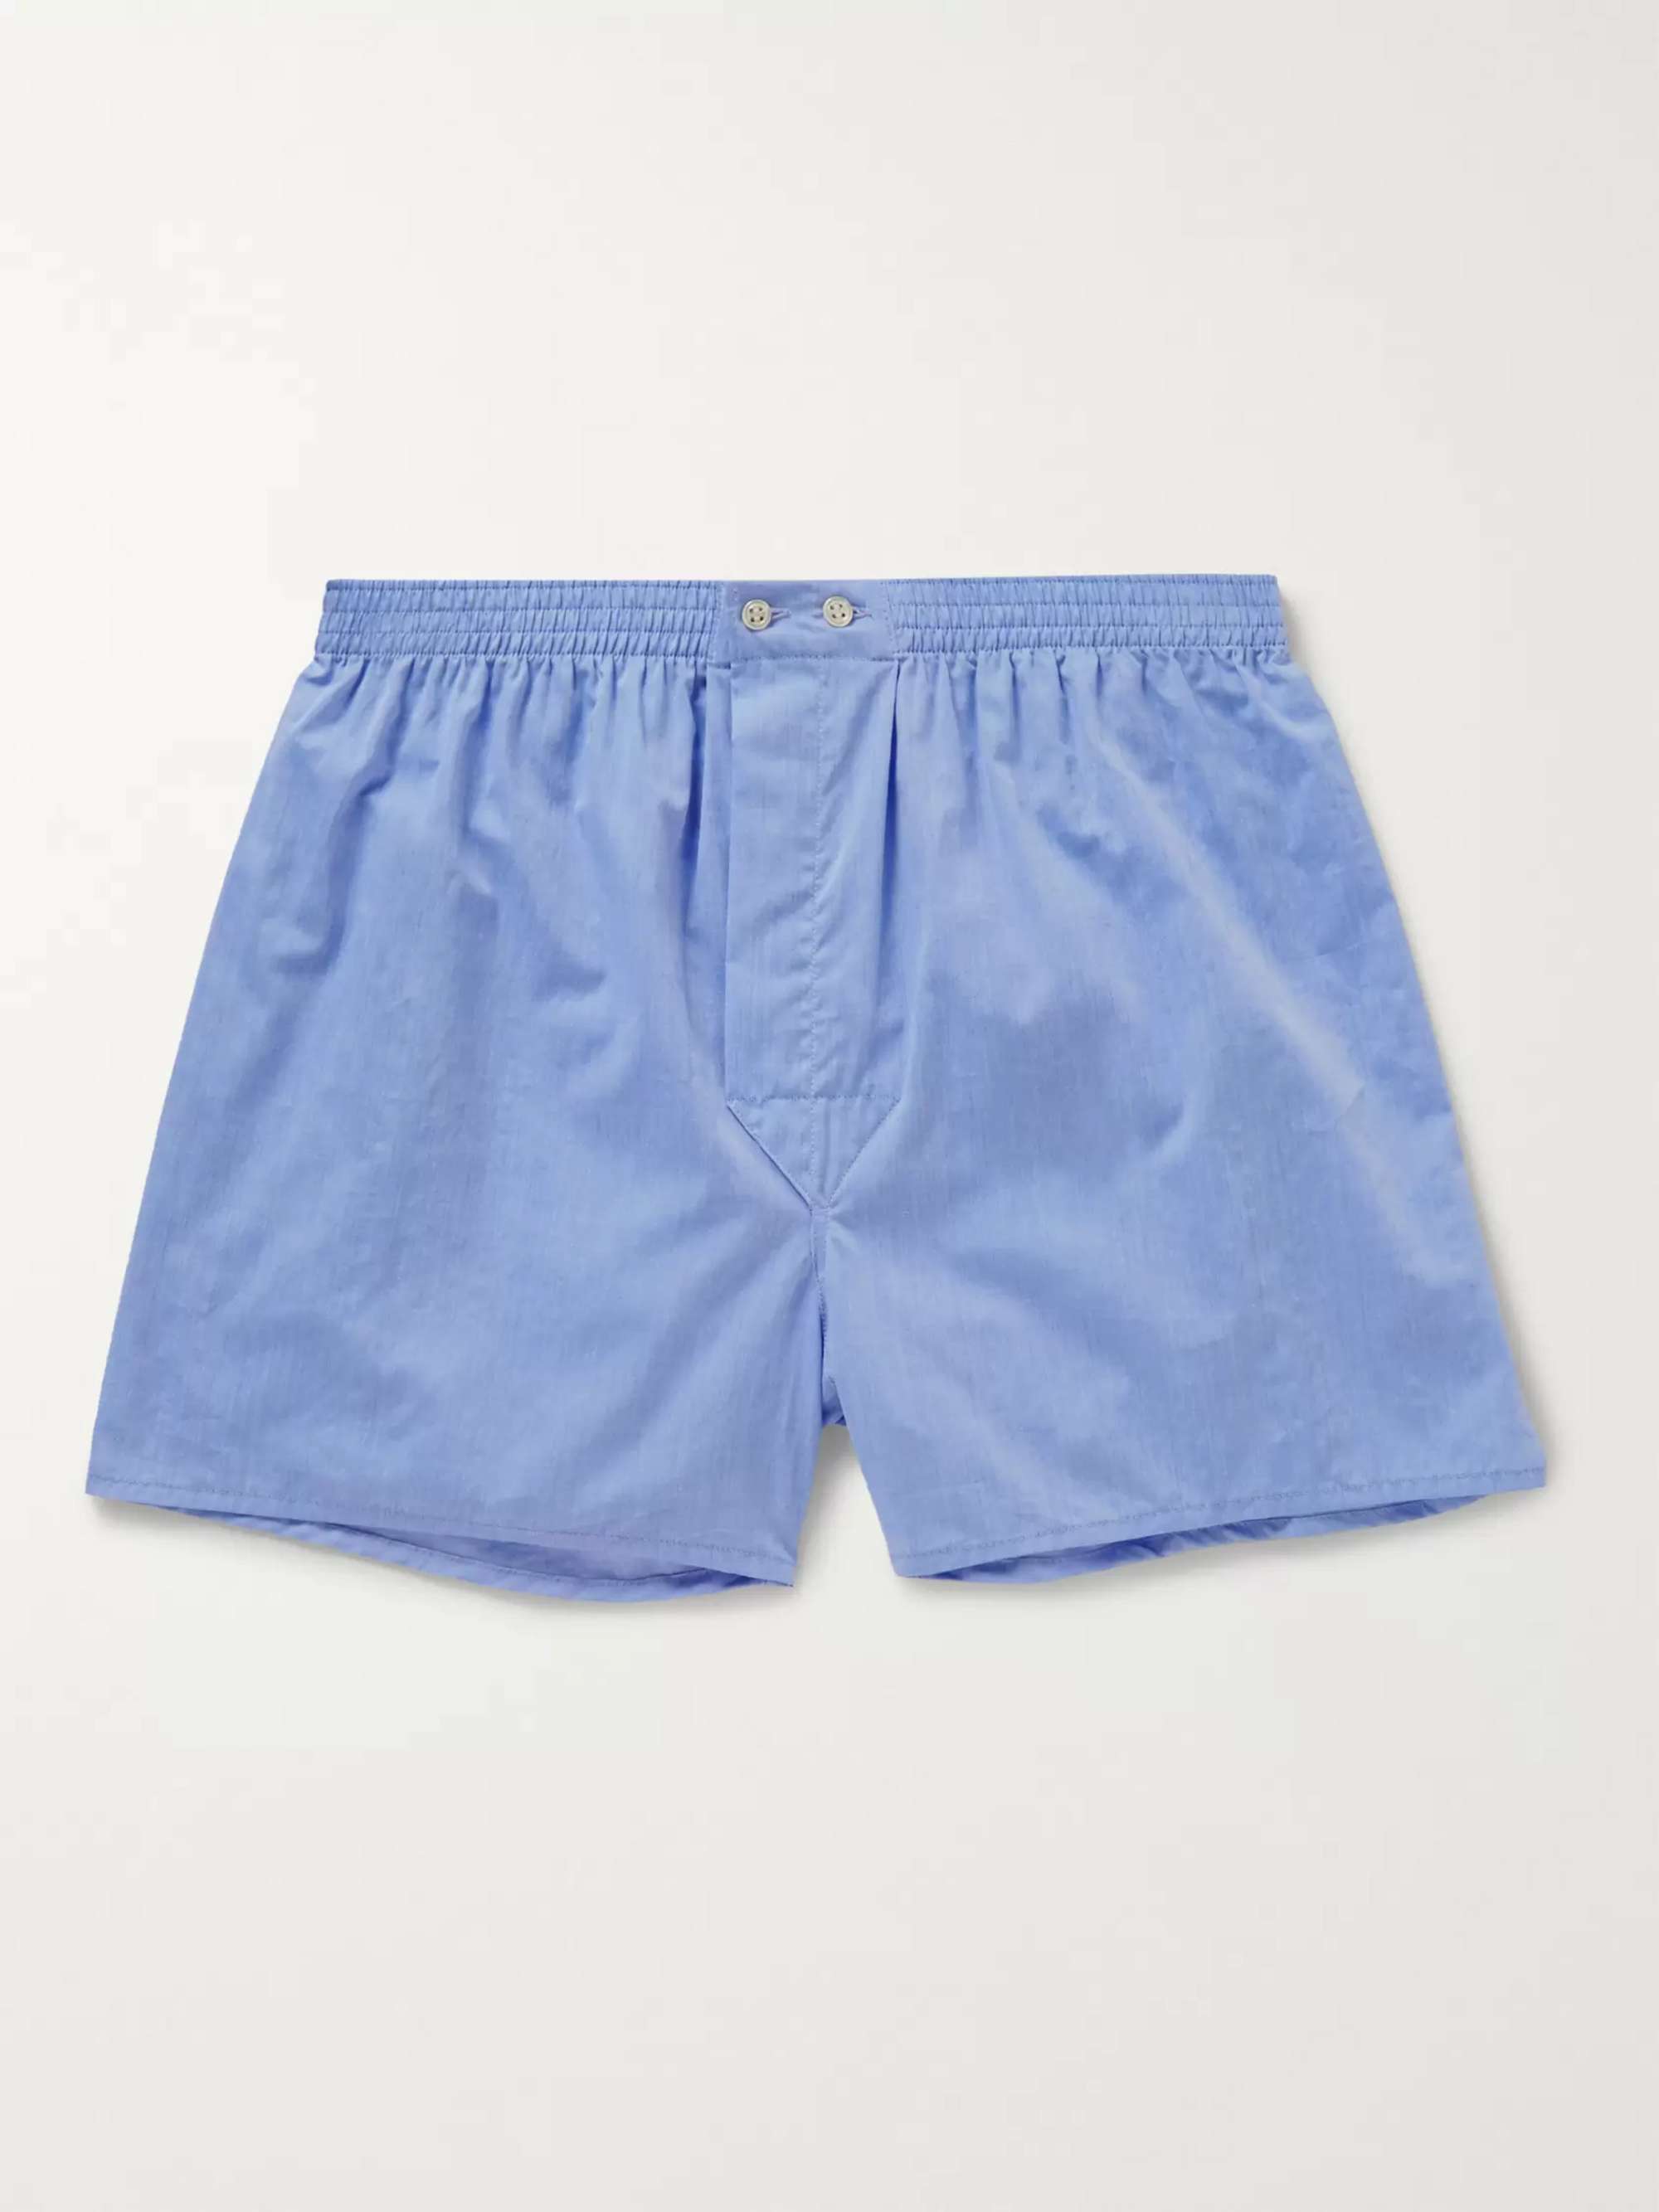 DEREK ROSE Amalfi Cotton Boxer Shorts for Men